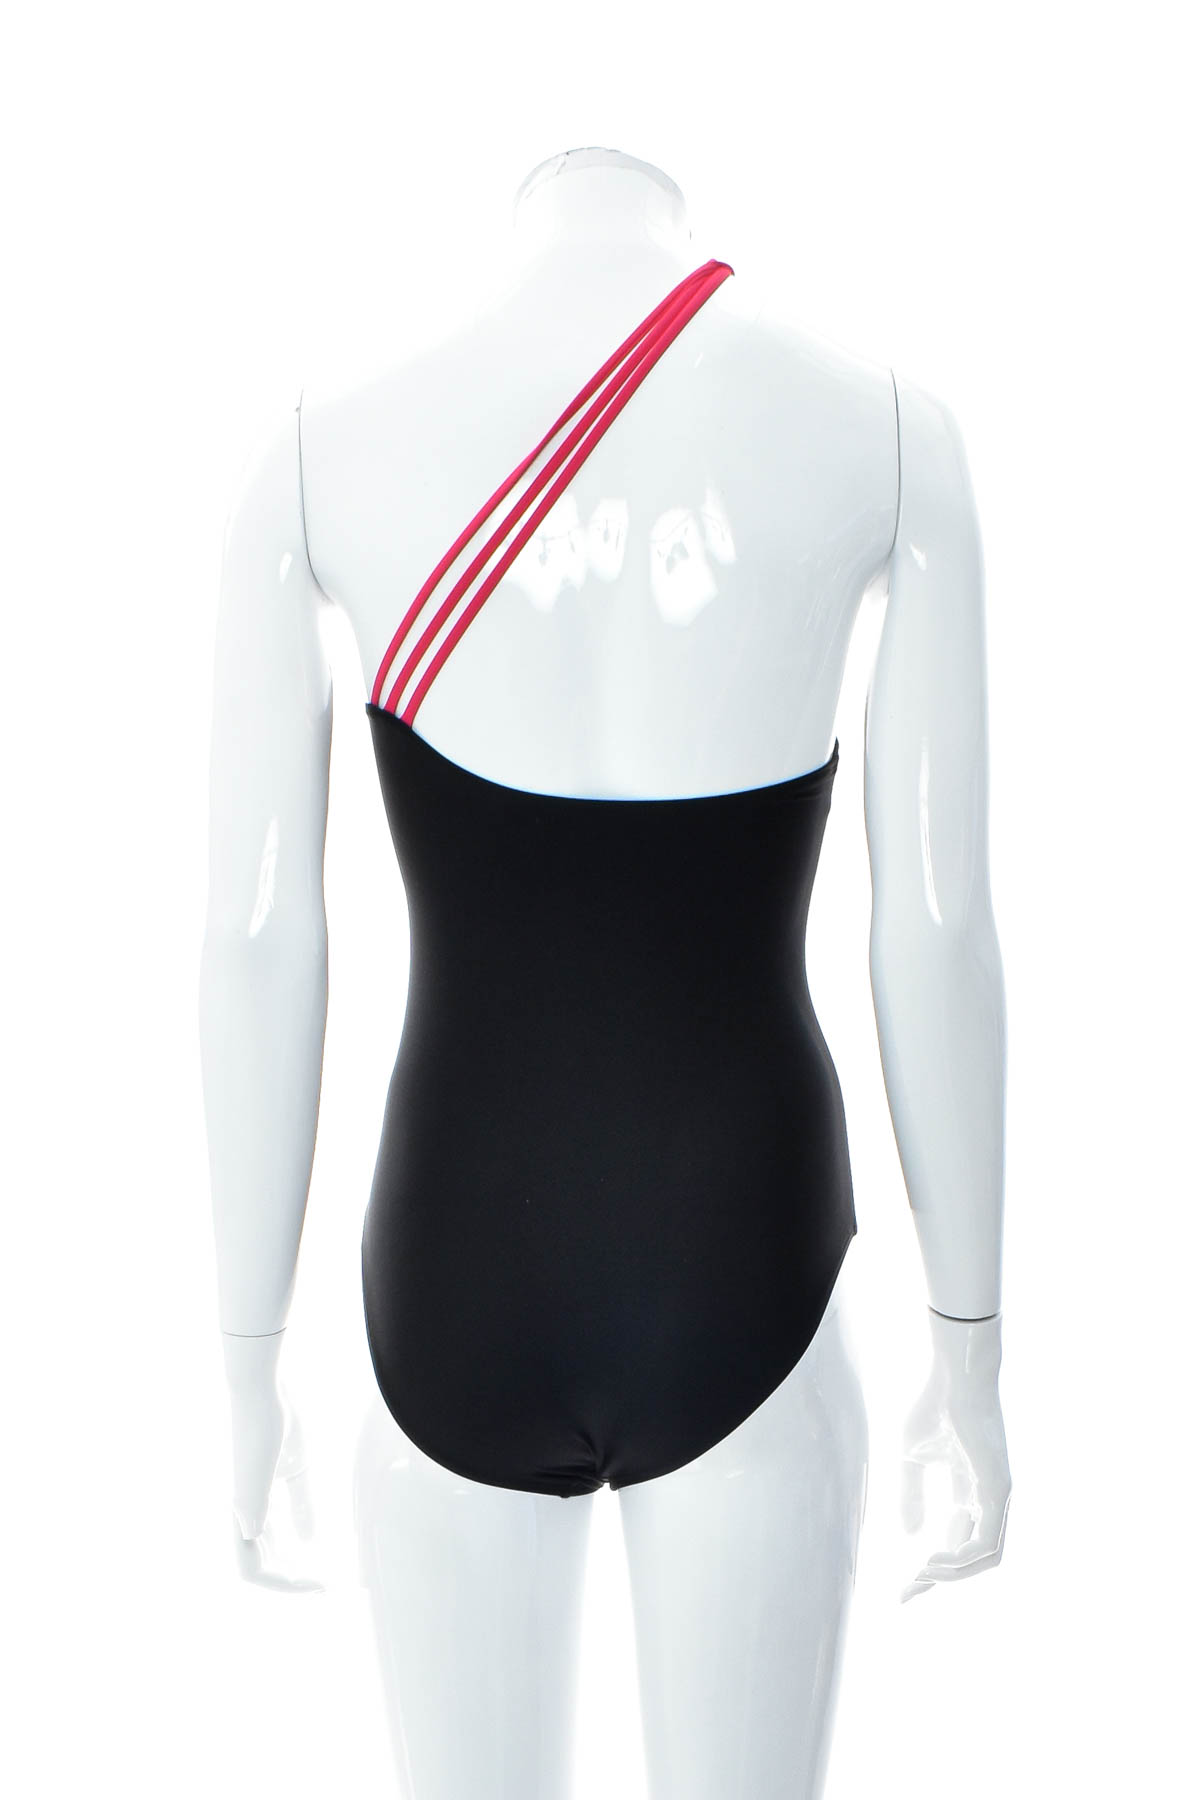 Women's swimsuit - Twintip - 1